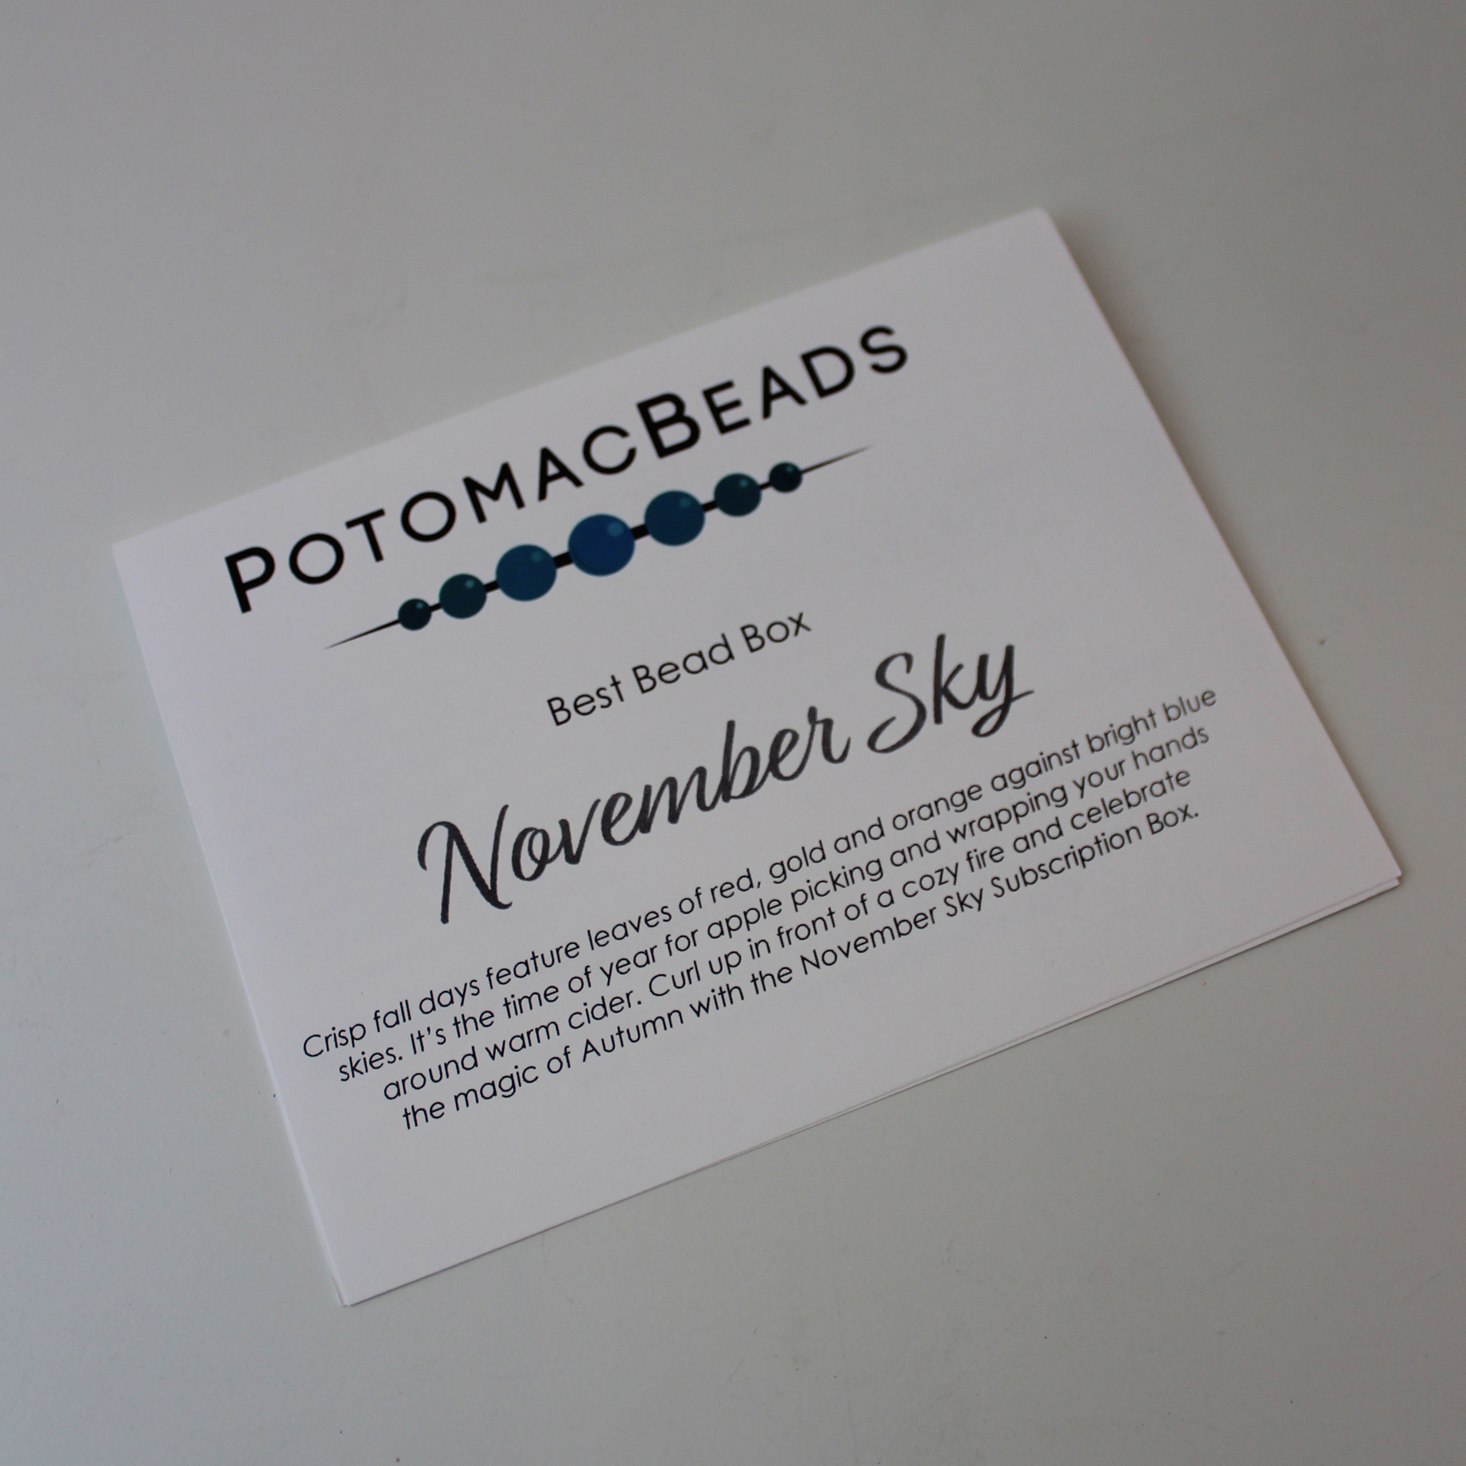 Potomac Beads November 2019 Booklet 1